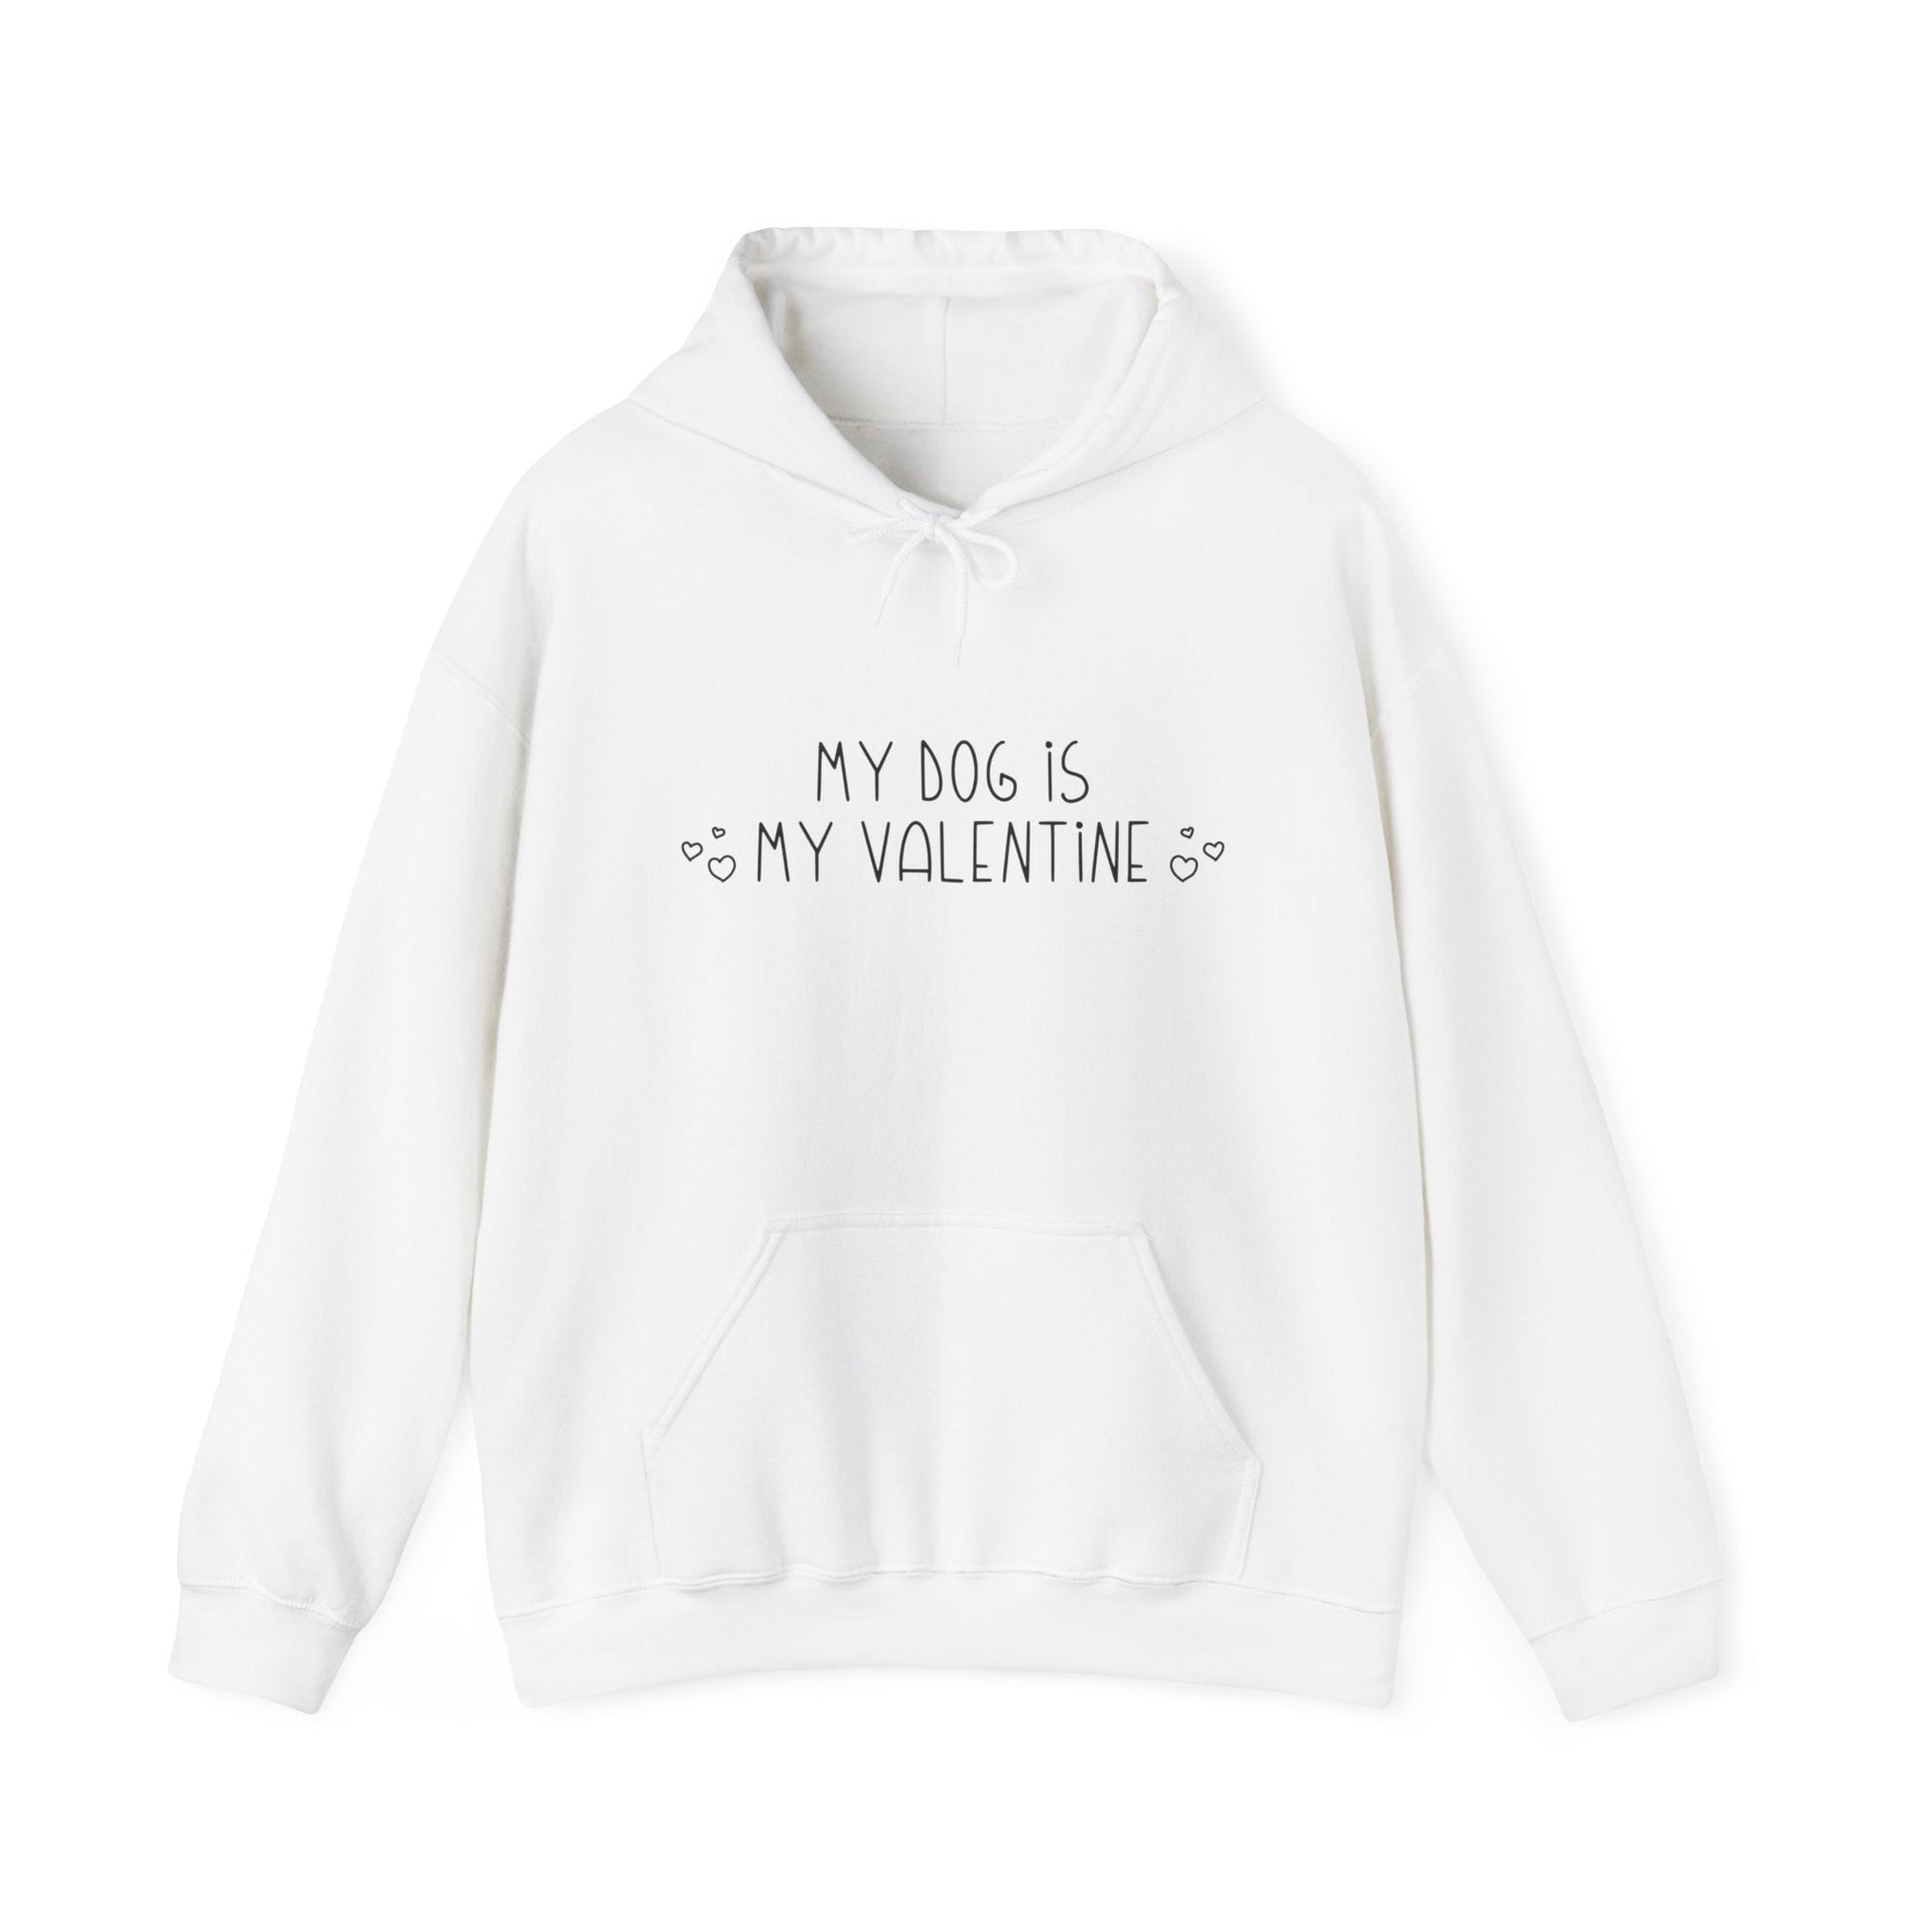 My Dog Is My Valentine | Hooded Sweatshirt - Detezi Designs-22071450178323697389